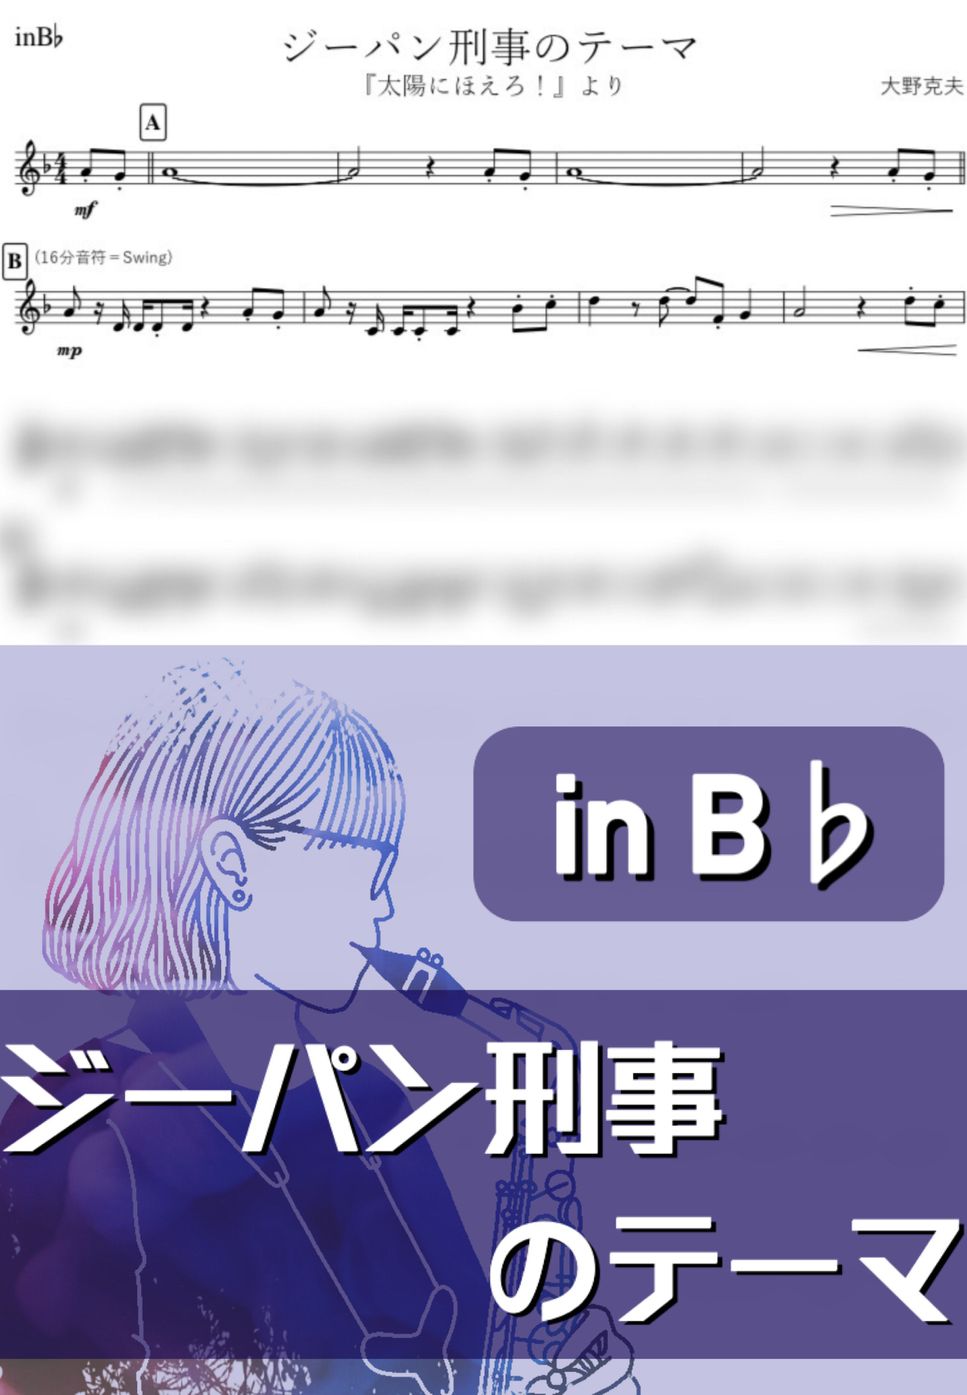 大野克夫 - ジーパン刑事のテーマ (B♭) by kanamsuic